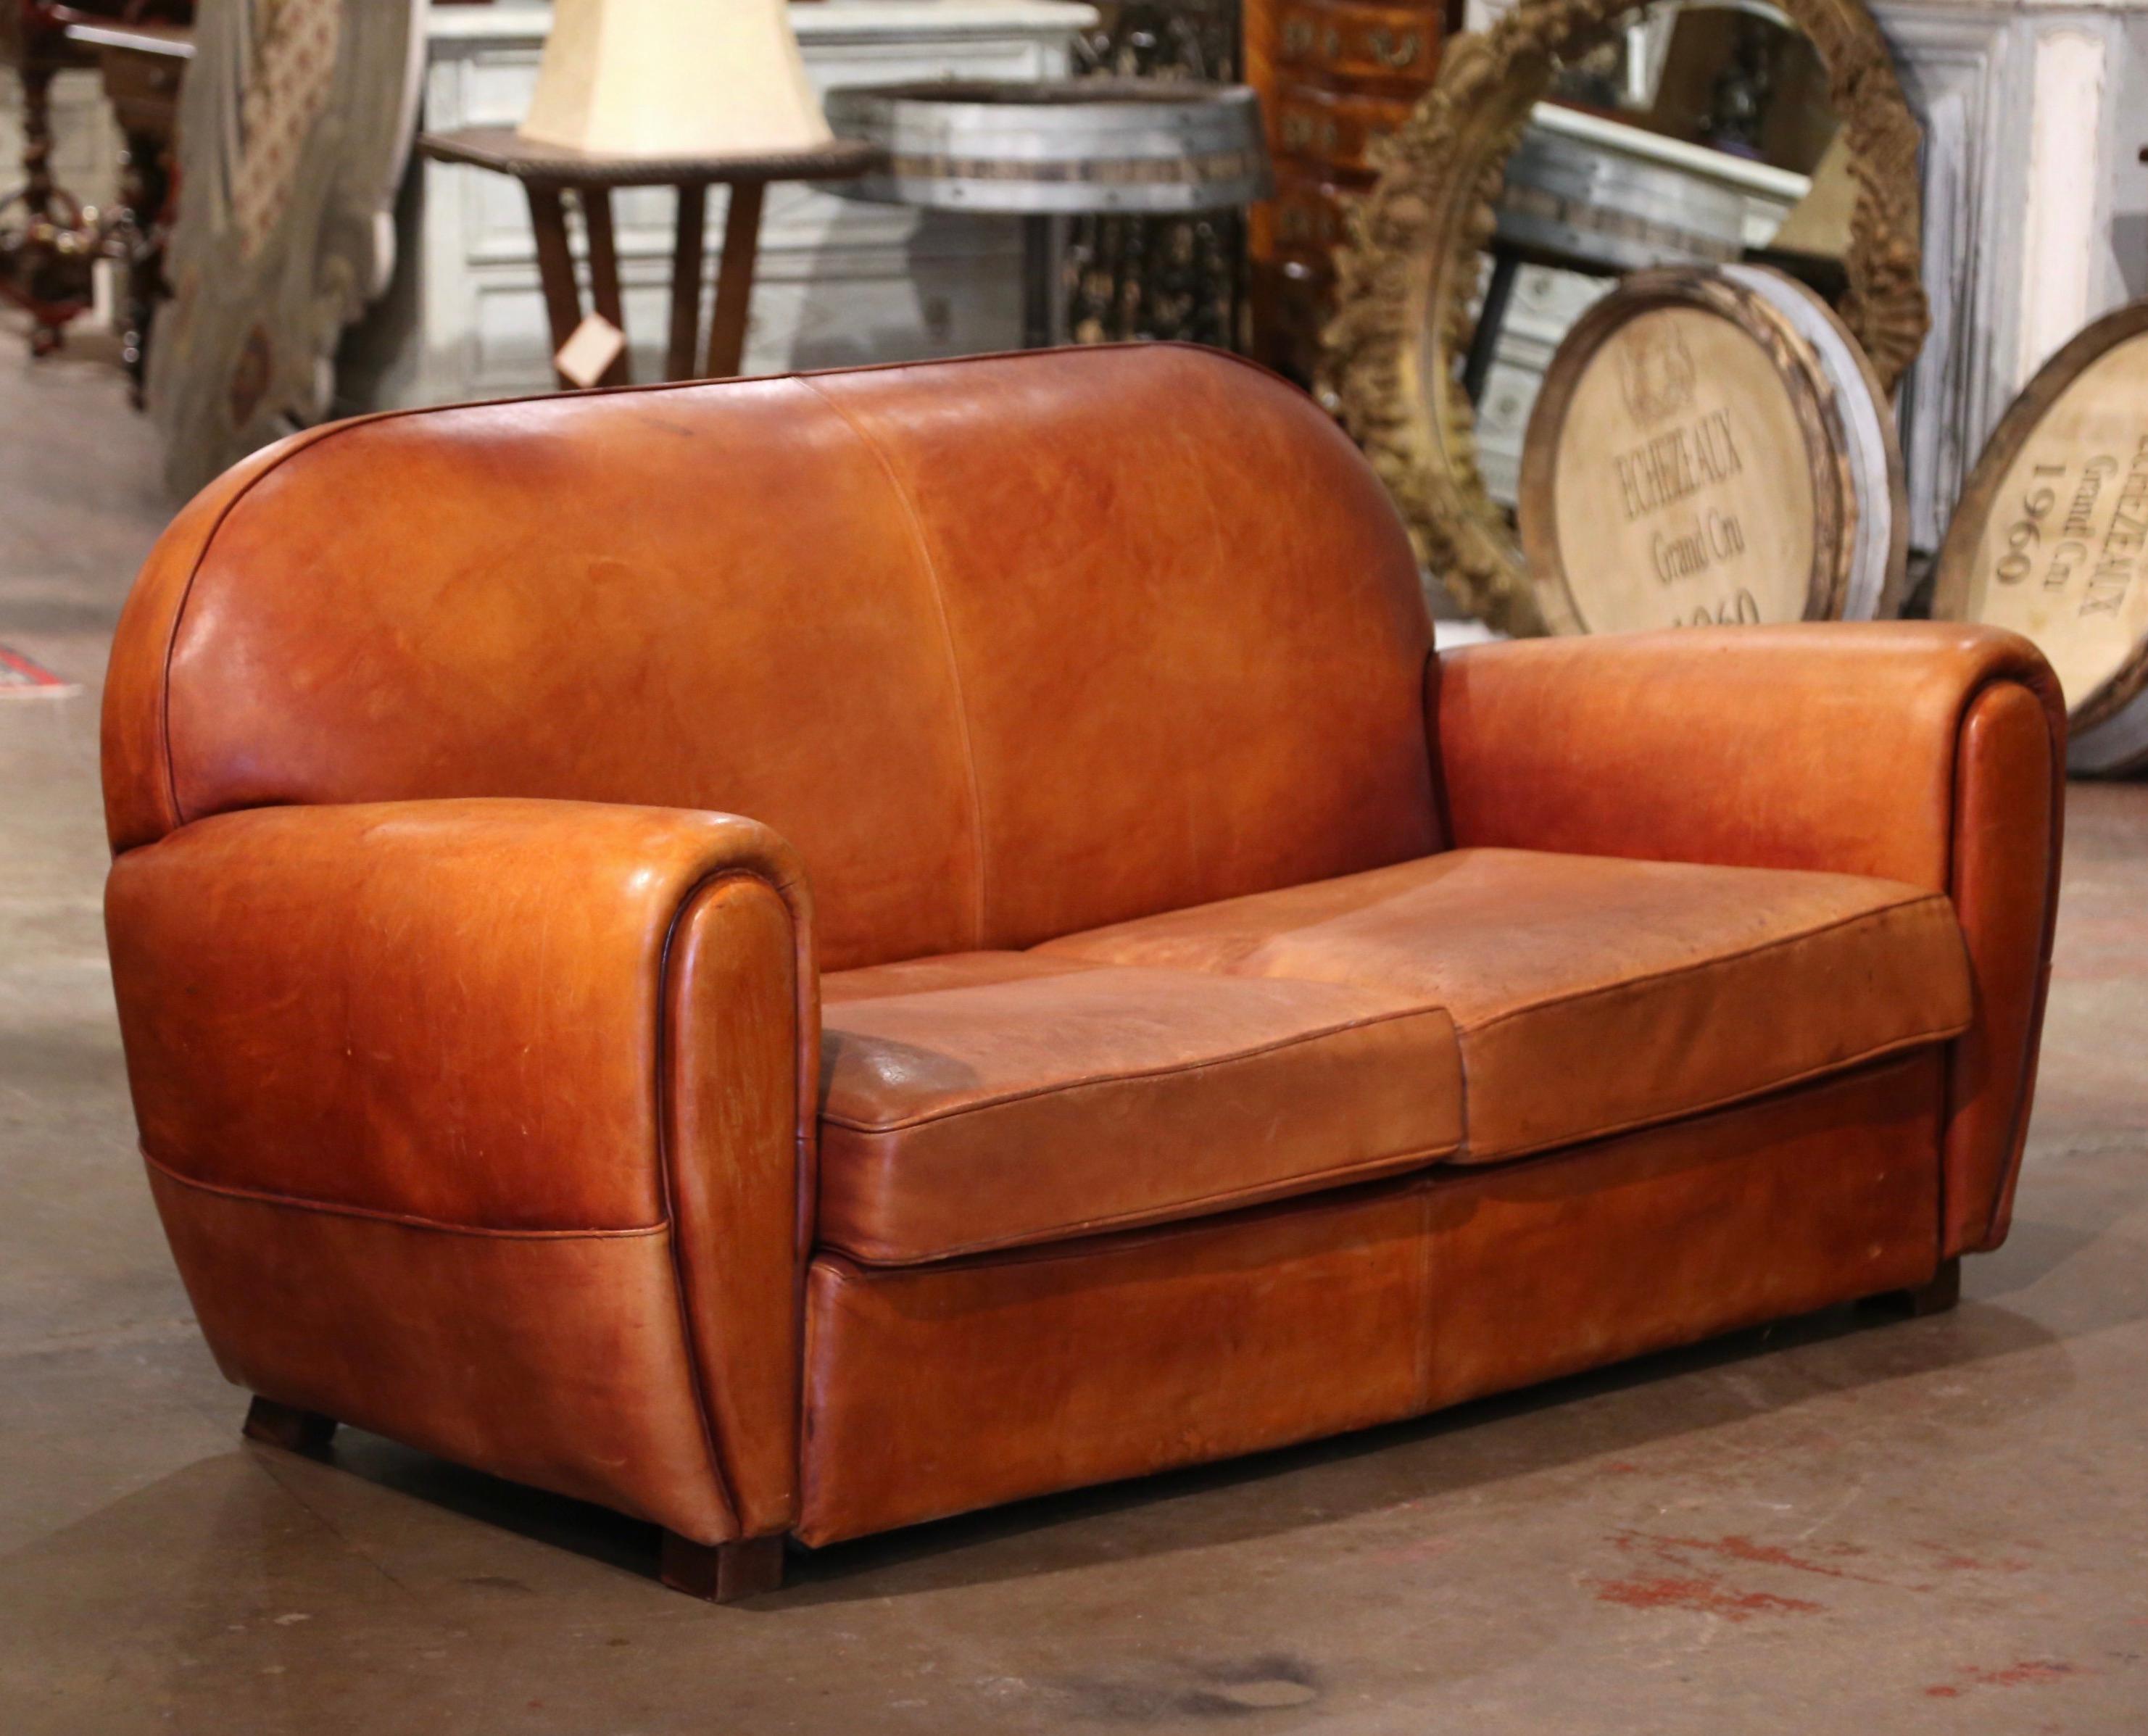 Dieses klassische, antike Art Deco Clubsofa wurde um 1920 in Frankreich hergestellt. Diese stattliche Couch zeichnet sich durch breite, abgerundete Armlehnen, eine schräge Rückenlehne mit gewölbtem Oberteil und quadratische, mit Leder bezogene Füße